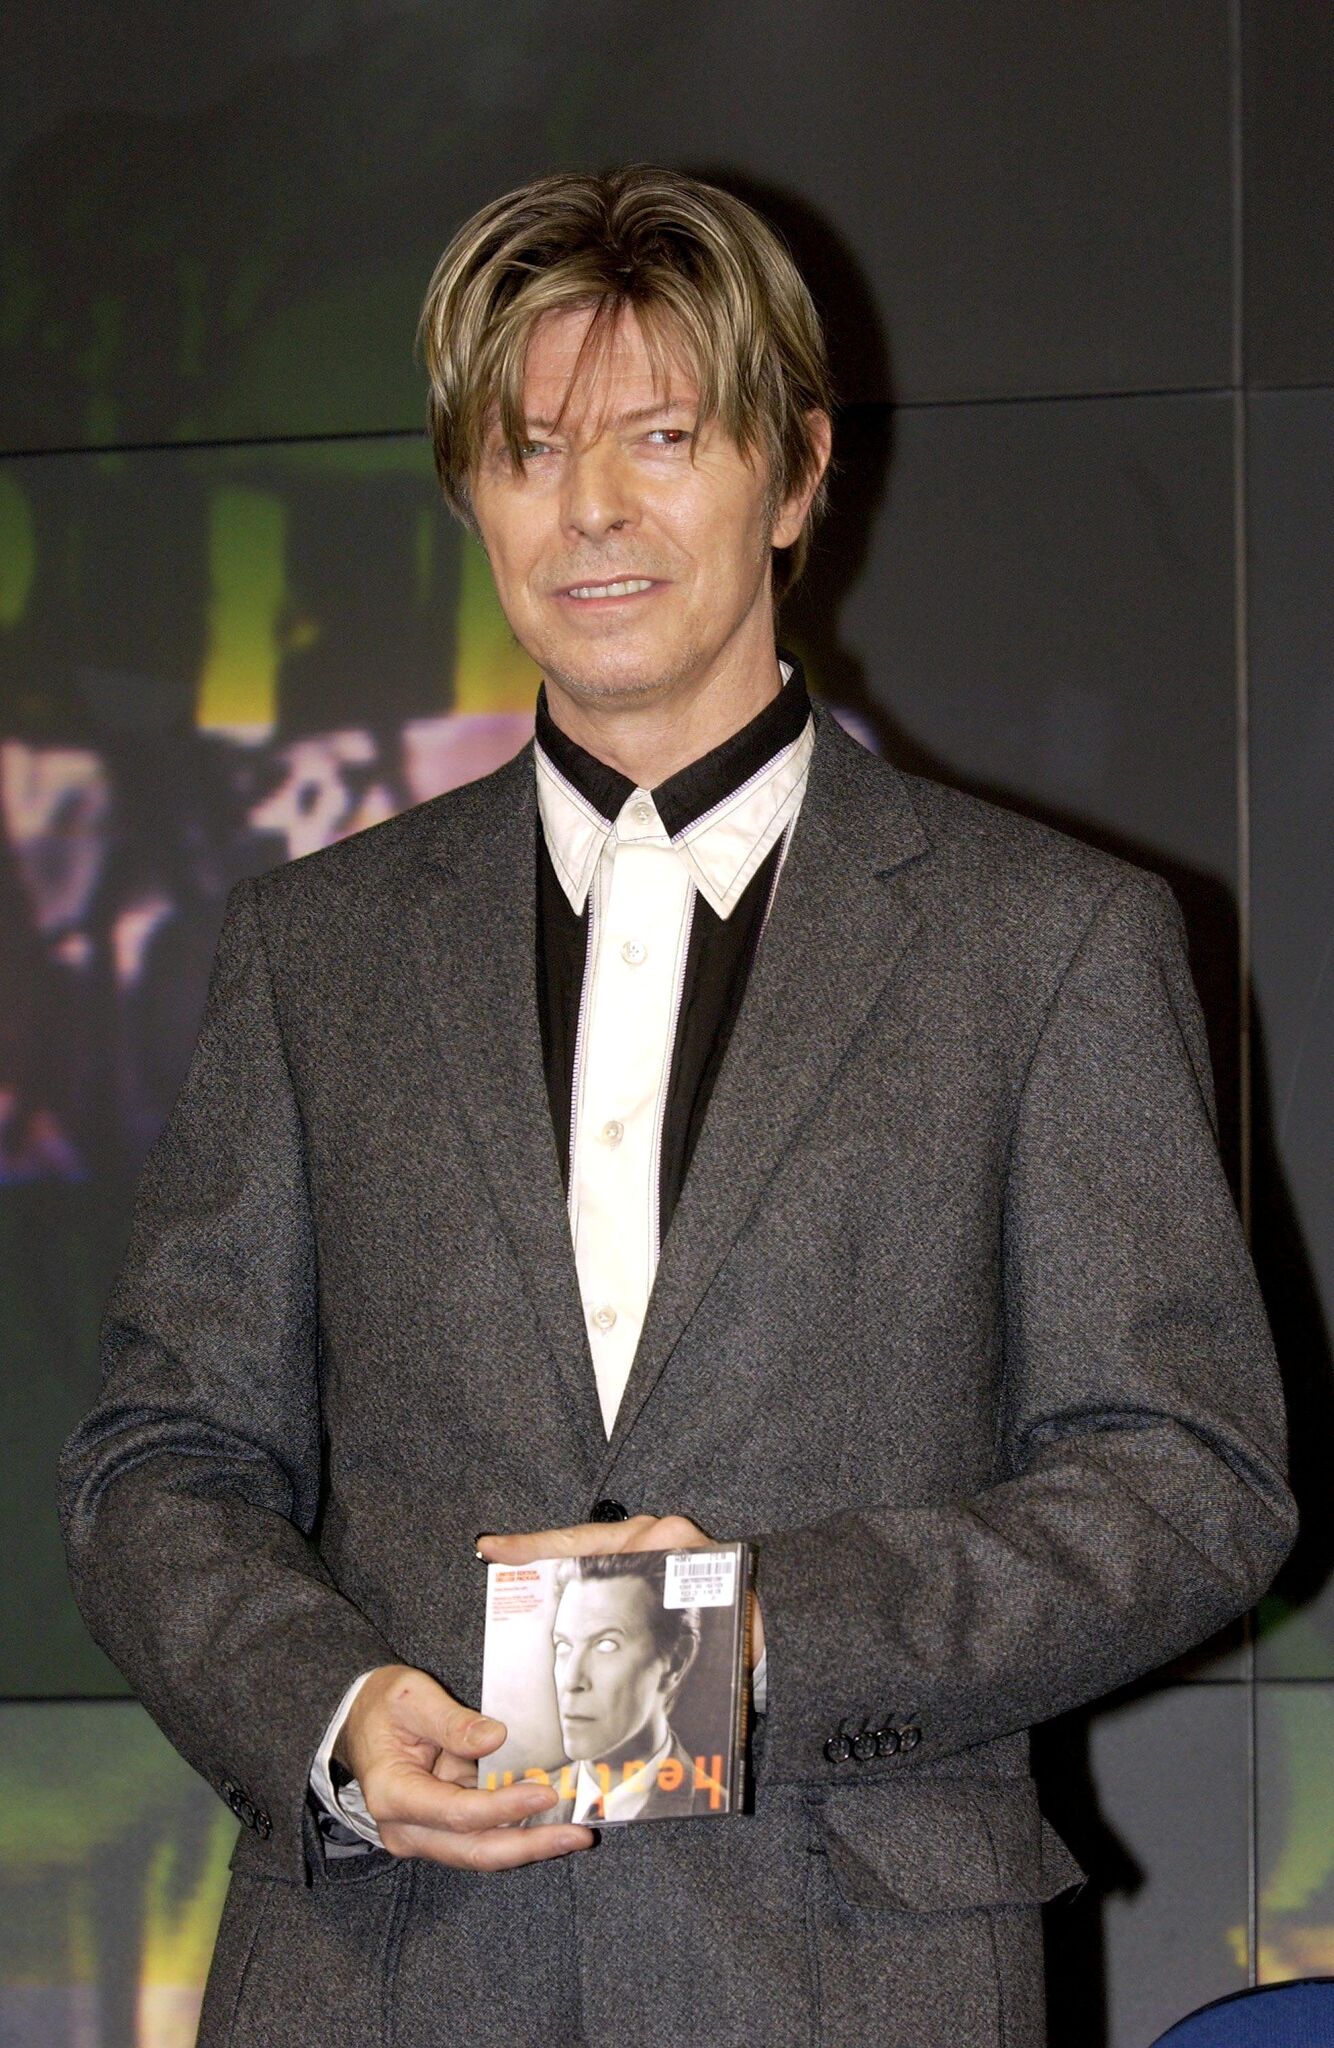 David Bowie Promoting His Album 'Heathen' At The Hmv Shop | Getty Images